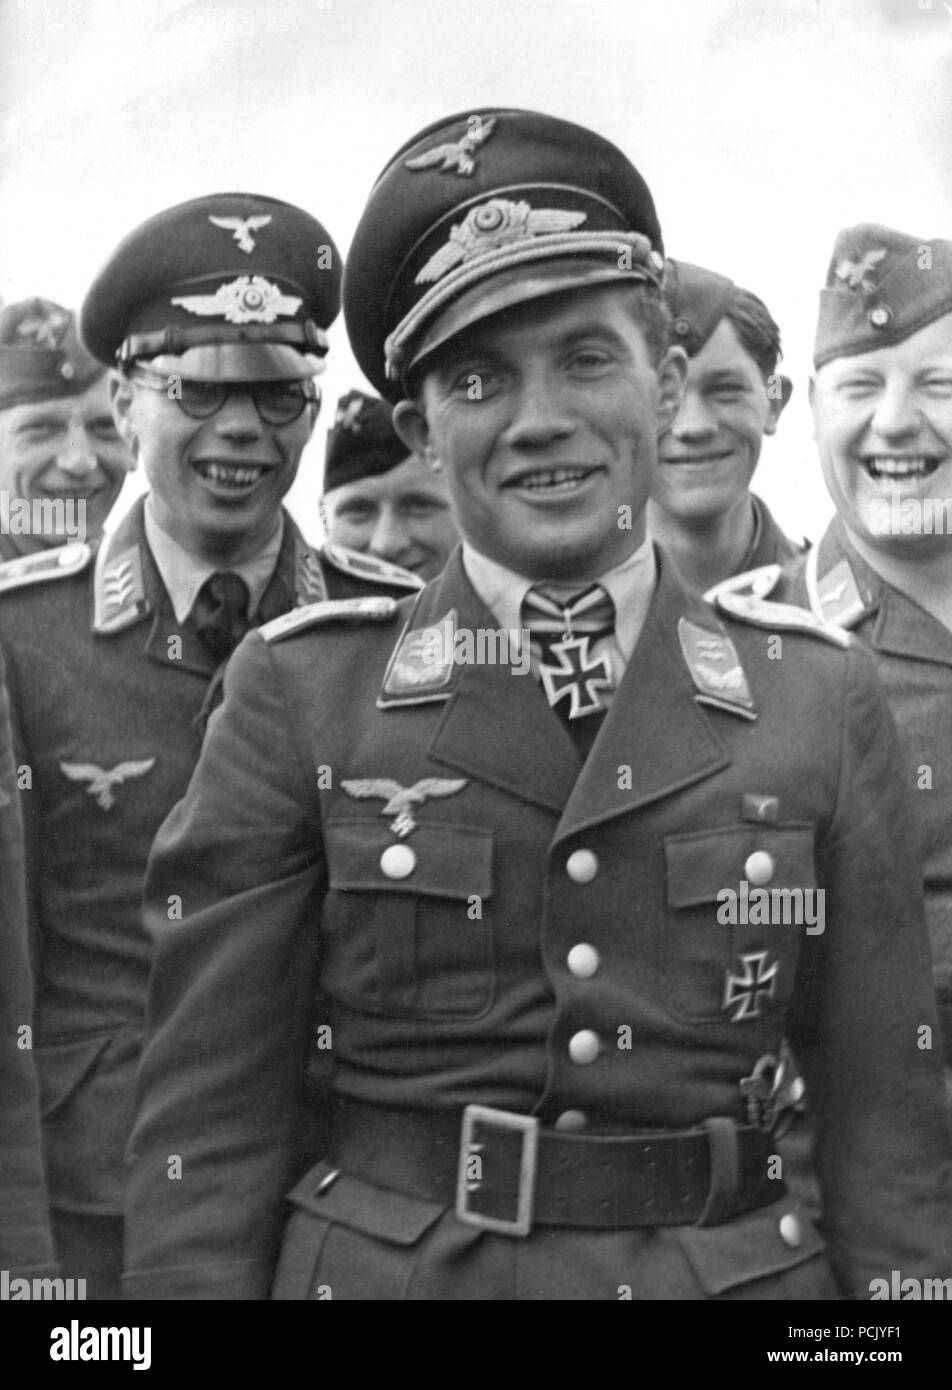 Immagine da un album di foto relative a II. Gruppe, Jagdgeschwader 3: Oberleutnant Franz von Werra con gli ufficiali e gli uomini di II. Gruppe, Jagdgeschwader 3 a Mannheim-Sandhofen Airfield in aprile 1941 dopo l aggiudicazione della sua Ritterkreuz (cavaliere del Cross della croce di ferro). Aggiudicati il 14 dicembre 1940, von Werra non aveva ricevuto la Ritterkreuz fino al 25 aprile 1941 quando fu presentato personalmente da Adolf Hitler seguenti von Werra notoriamente la fuga dalla cattività come P.O.W in Canada. Foto Stock